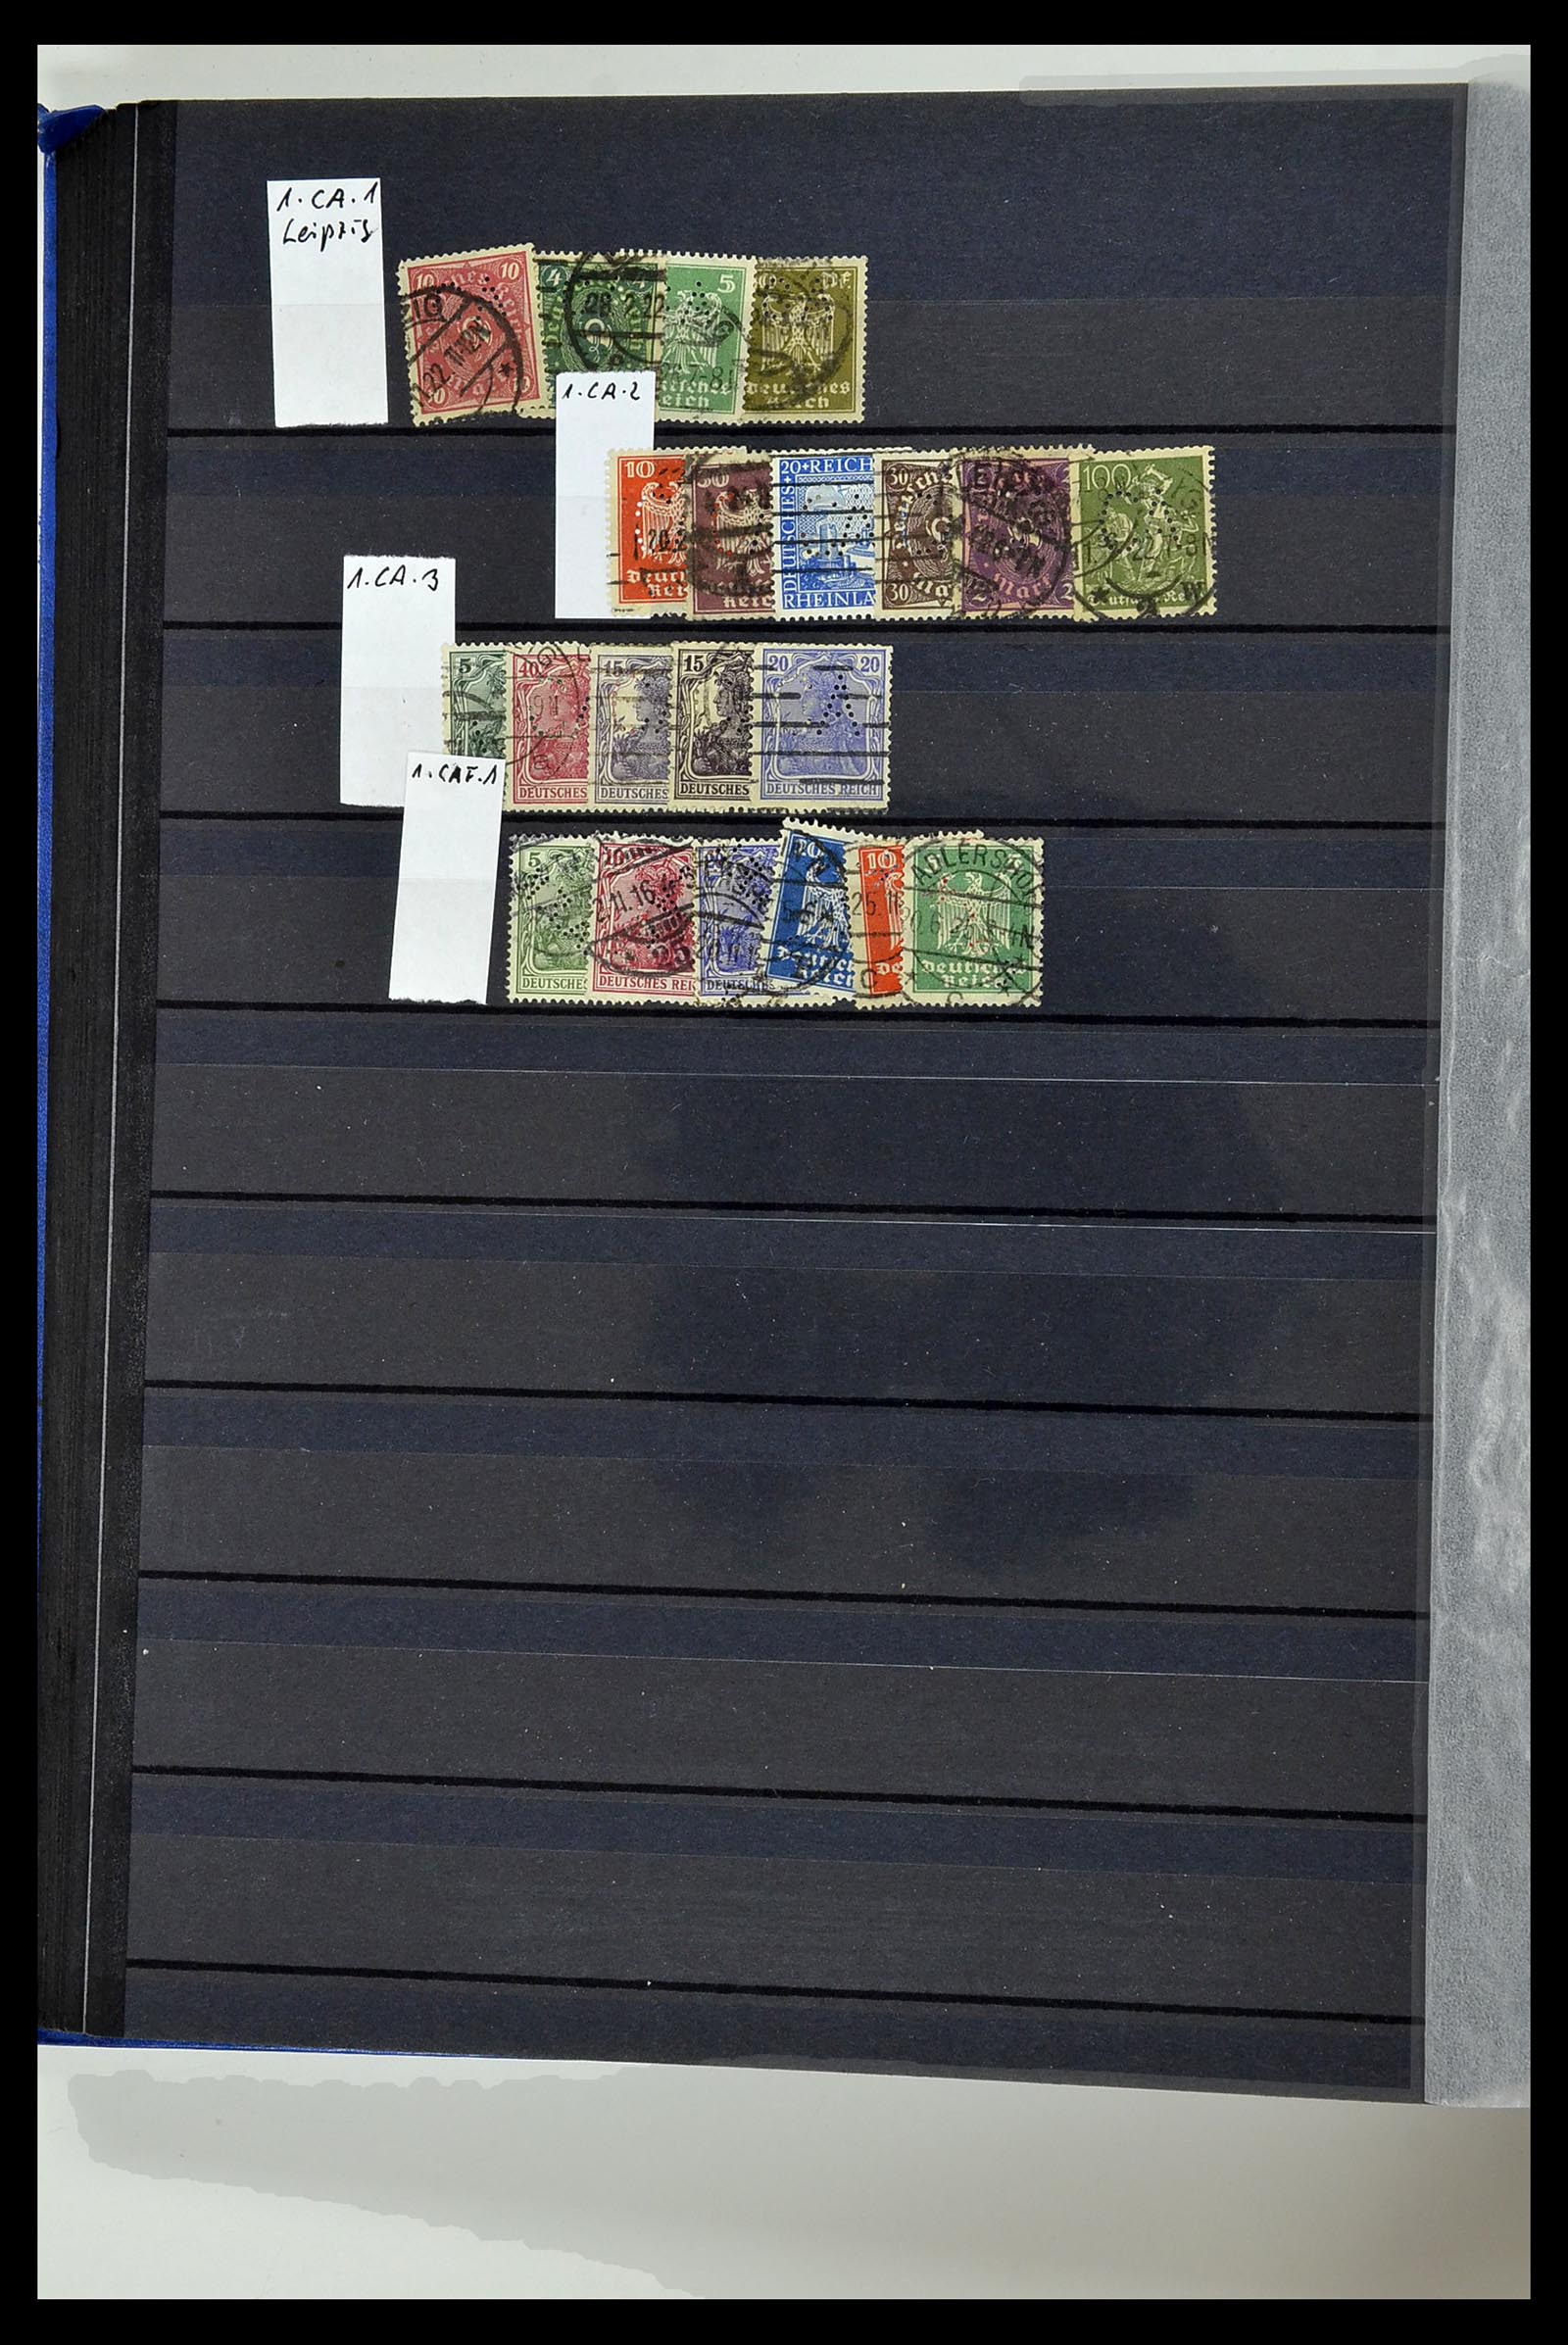 34432 076 - Stamp Collection 34432 German Reich perfins 1900-1933.